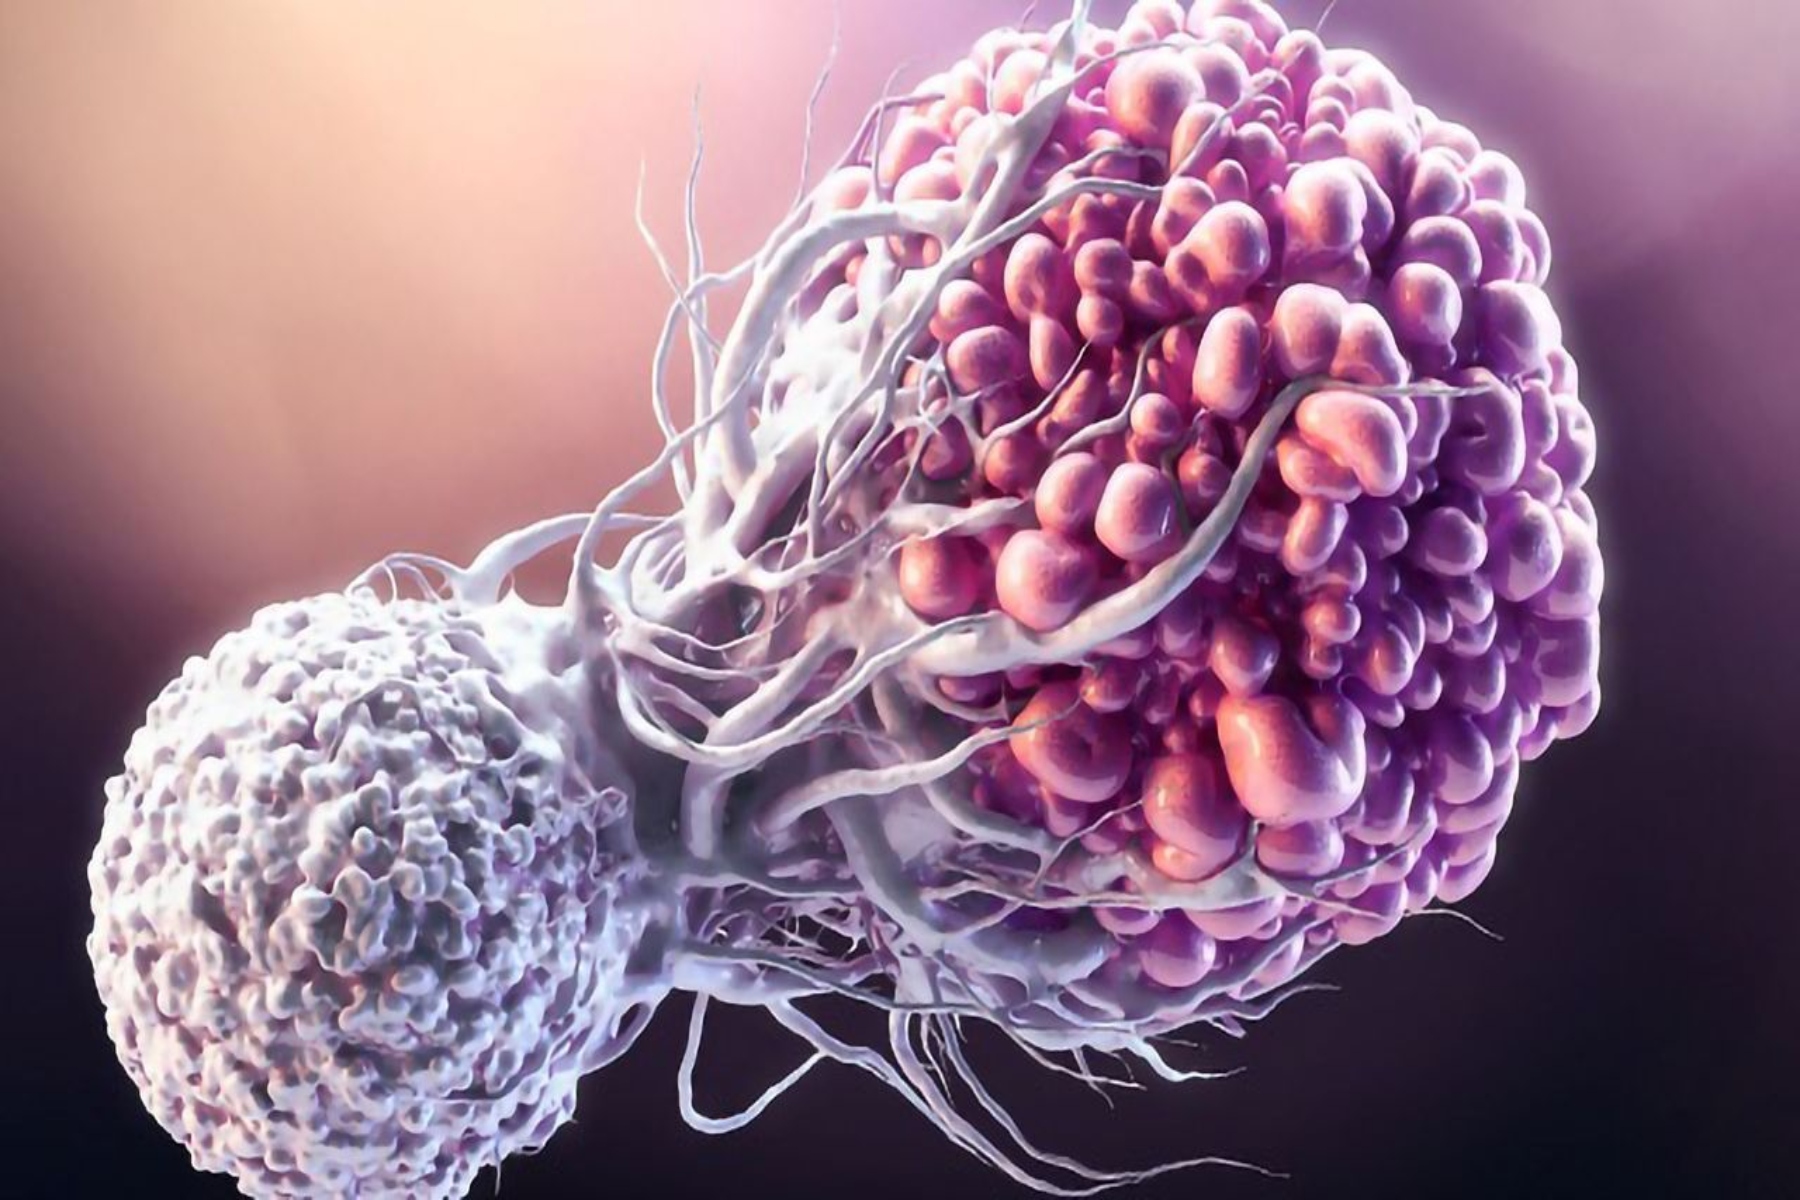 Επιγενετική: Βρισκόμαστε σε μια νέα εποχή έρευνας για τον καρκίνο;